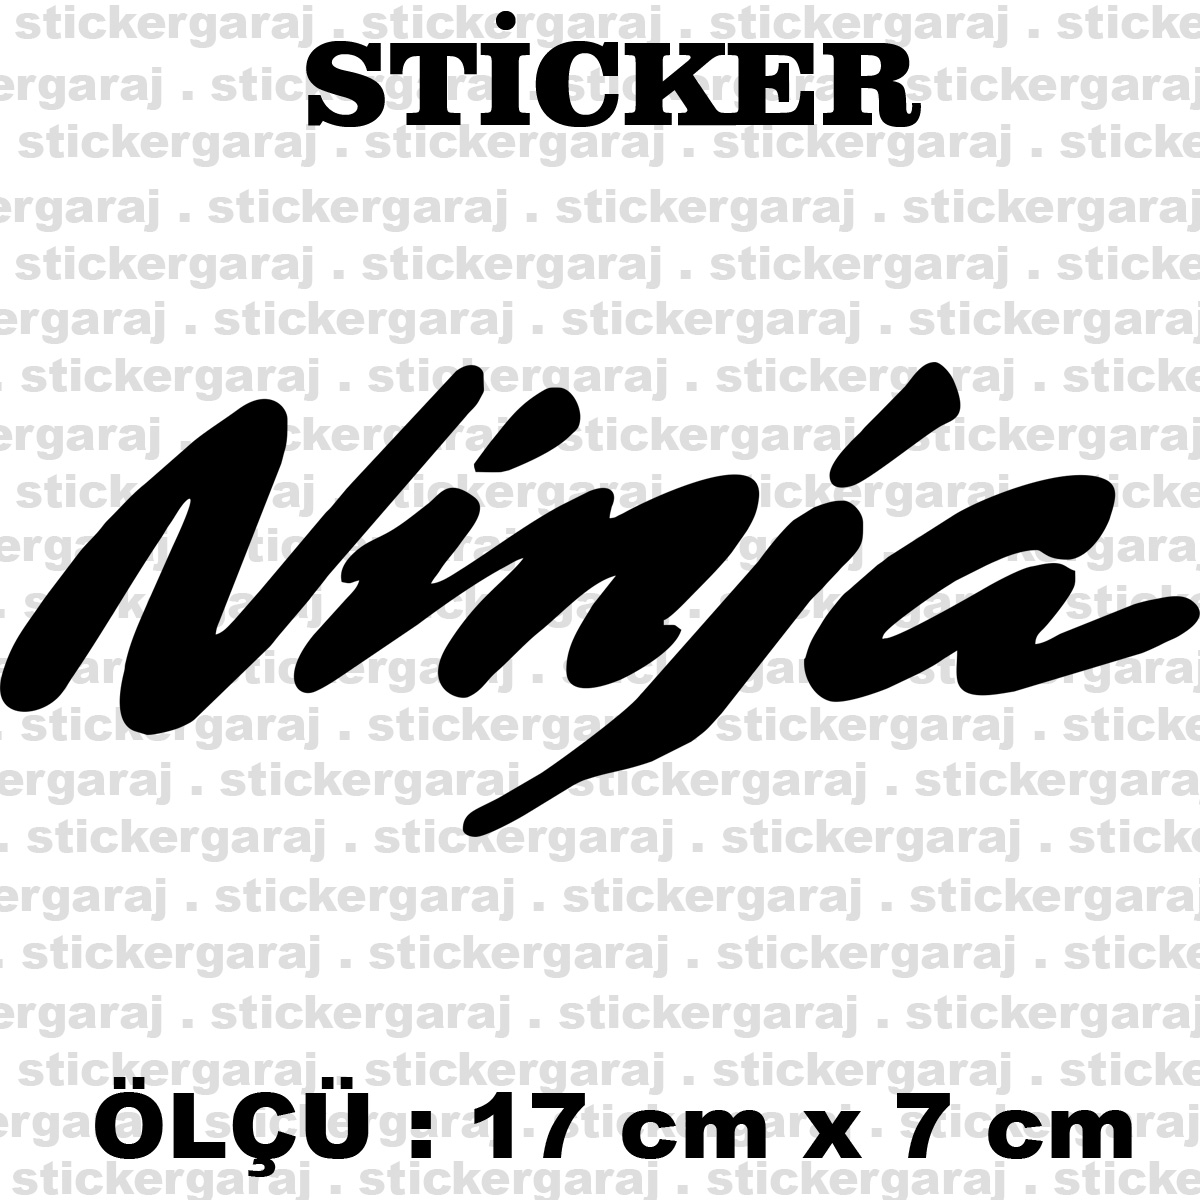 ninja.cdr 7 17cm - Ninja yazı sticker